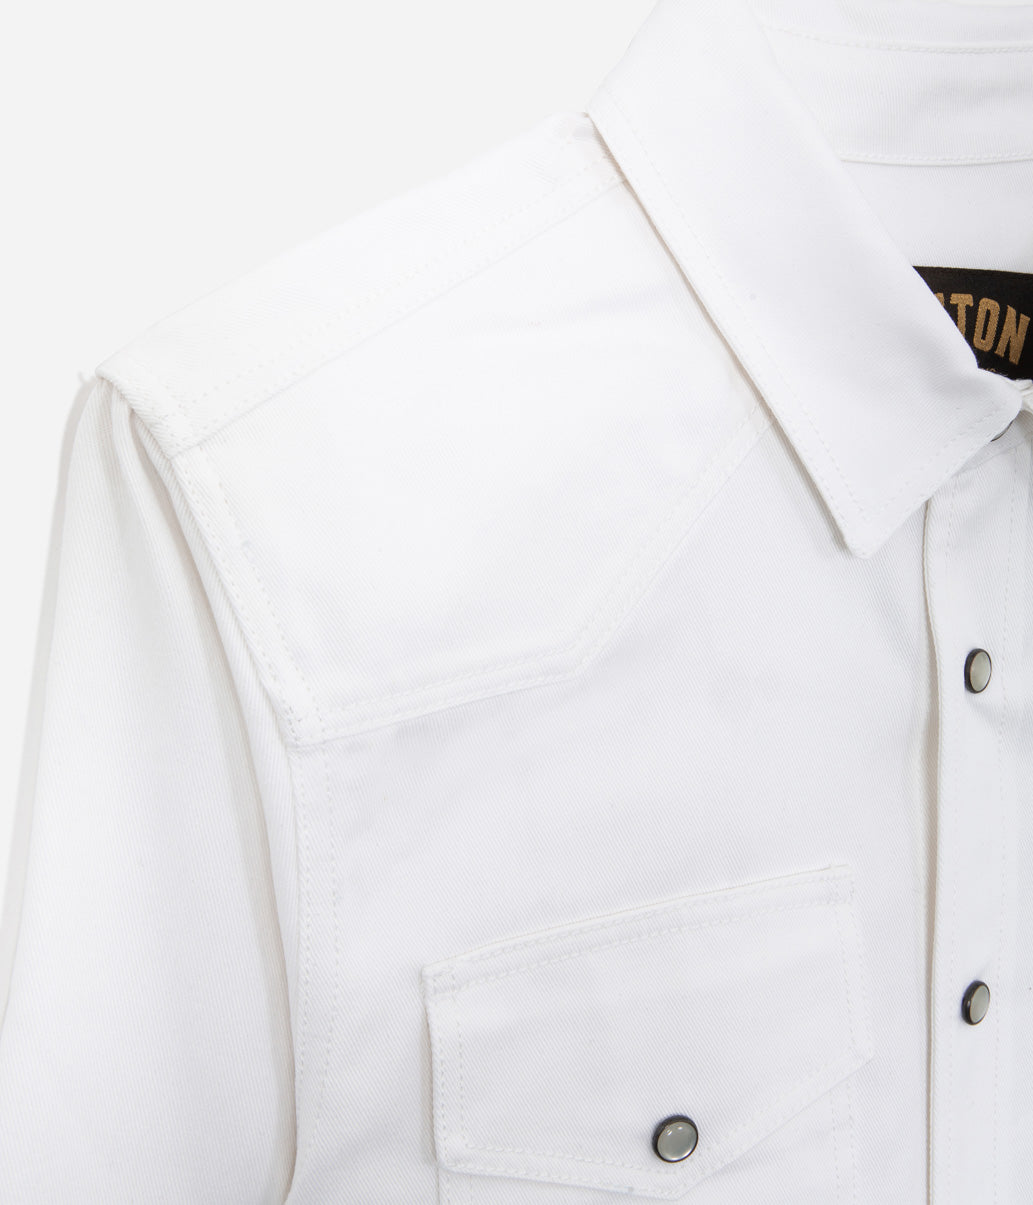 Tonton et Fils - La chemise «Jimmy» twill blanc - Fabriquée en France - Vue de l'emmenchure 